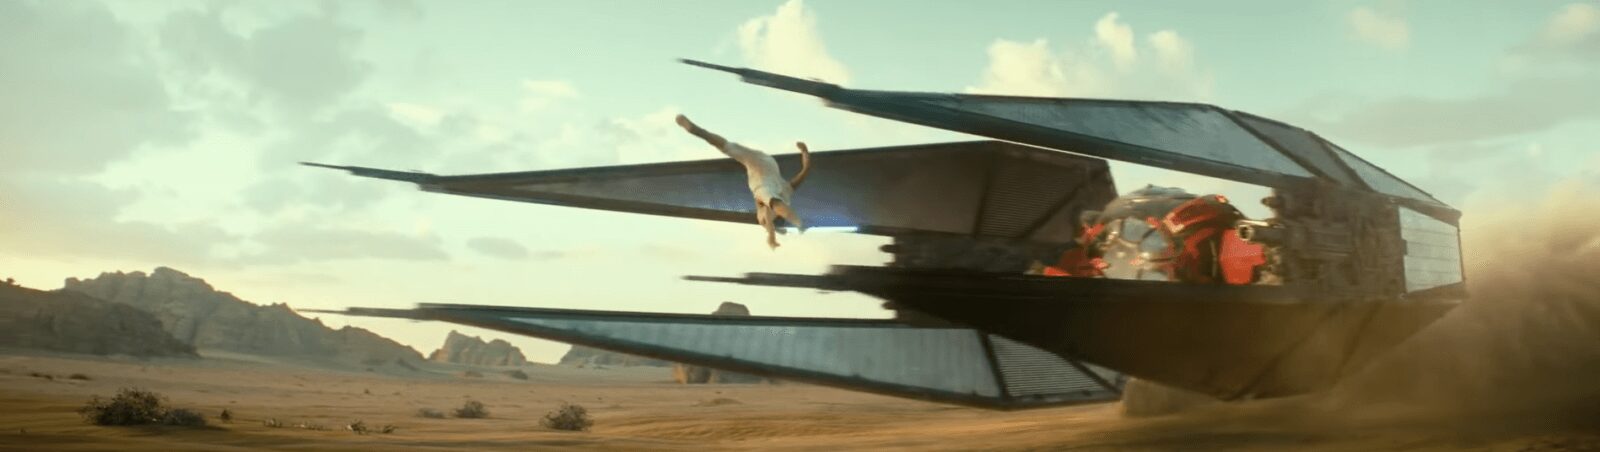 Star Wars IX: The Rise of Skywalker, veja agora o trailer e mais detalhes